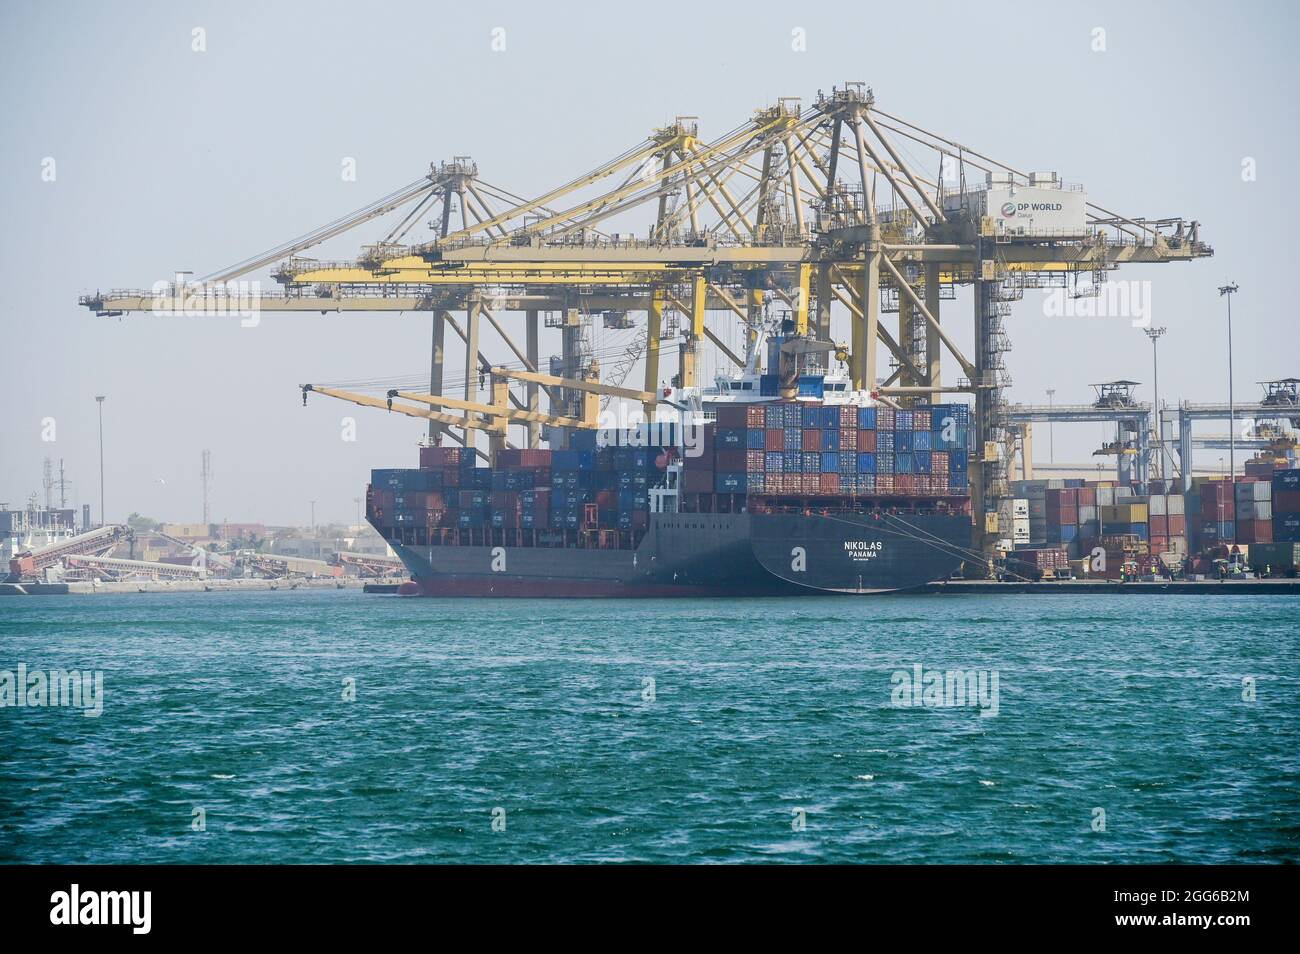 Senegal, Dakar, Hafen, DP World Dakar - Terminal à Conteneur, Container Terminal, Containerschiff Nikolas in Panama registriert, DP World ist einer der weltweit größten Hafenbetreiber. Haupteigentümer ist Dubai World, die staatliche Investmentgruppe der Vereinigten Arabischen Emirate. Stock Photo